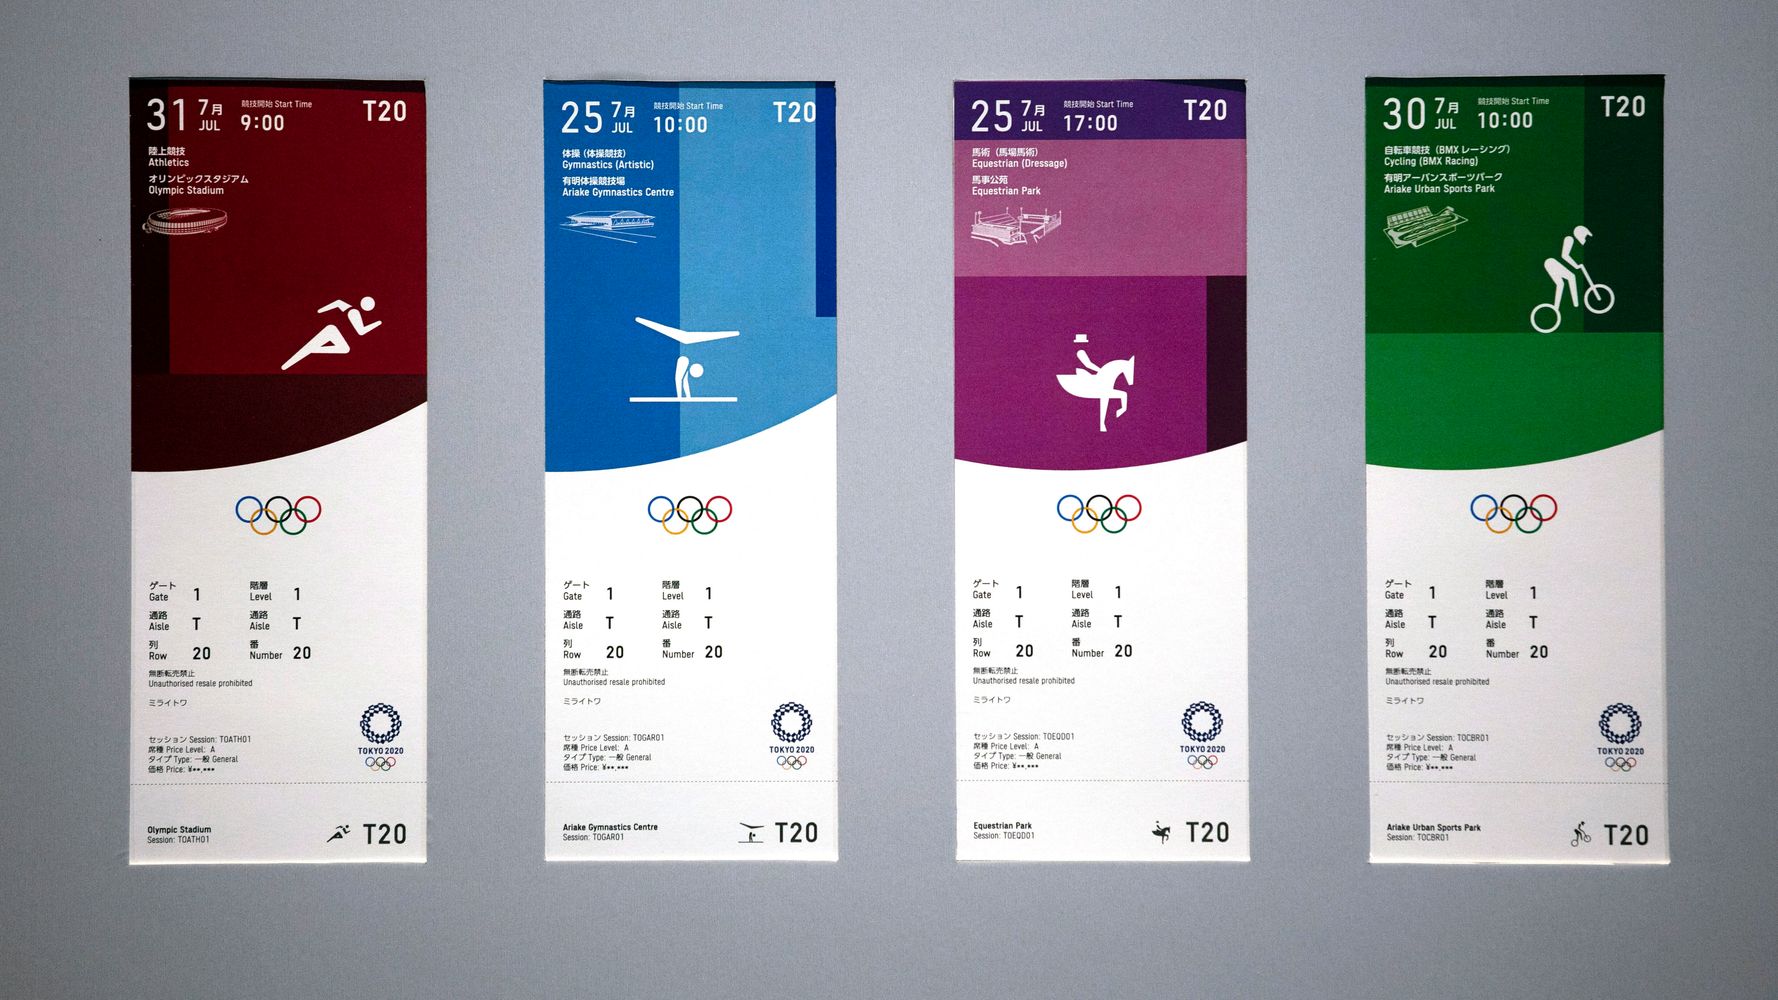 の商品一覧 東京 2020 オリンピック ゴルフ チケット - スポーツ